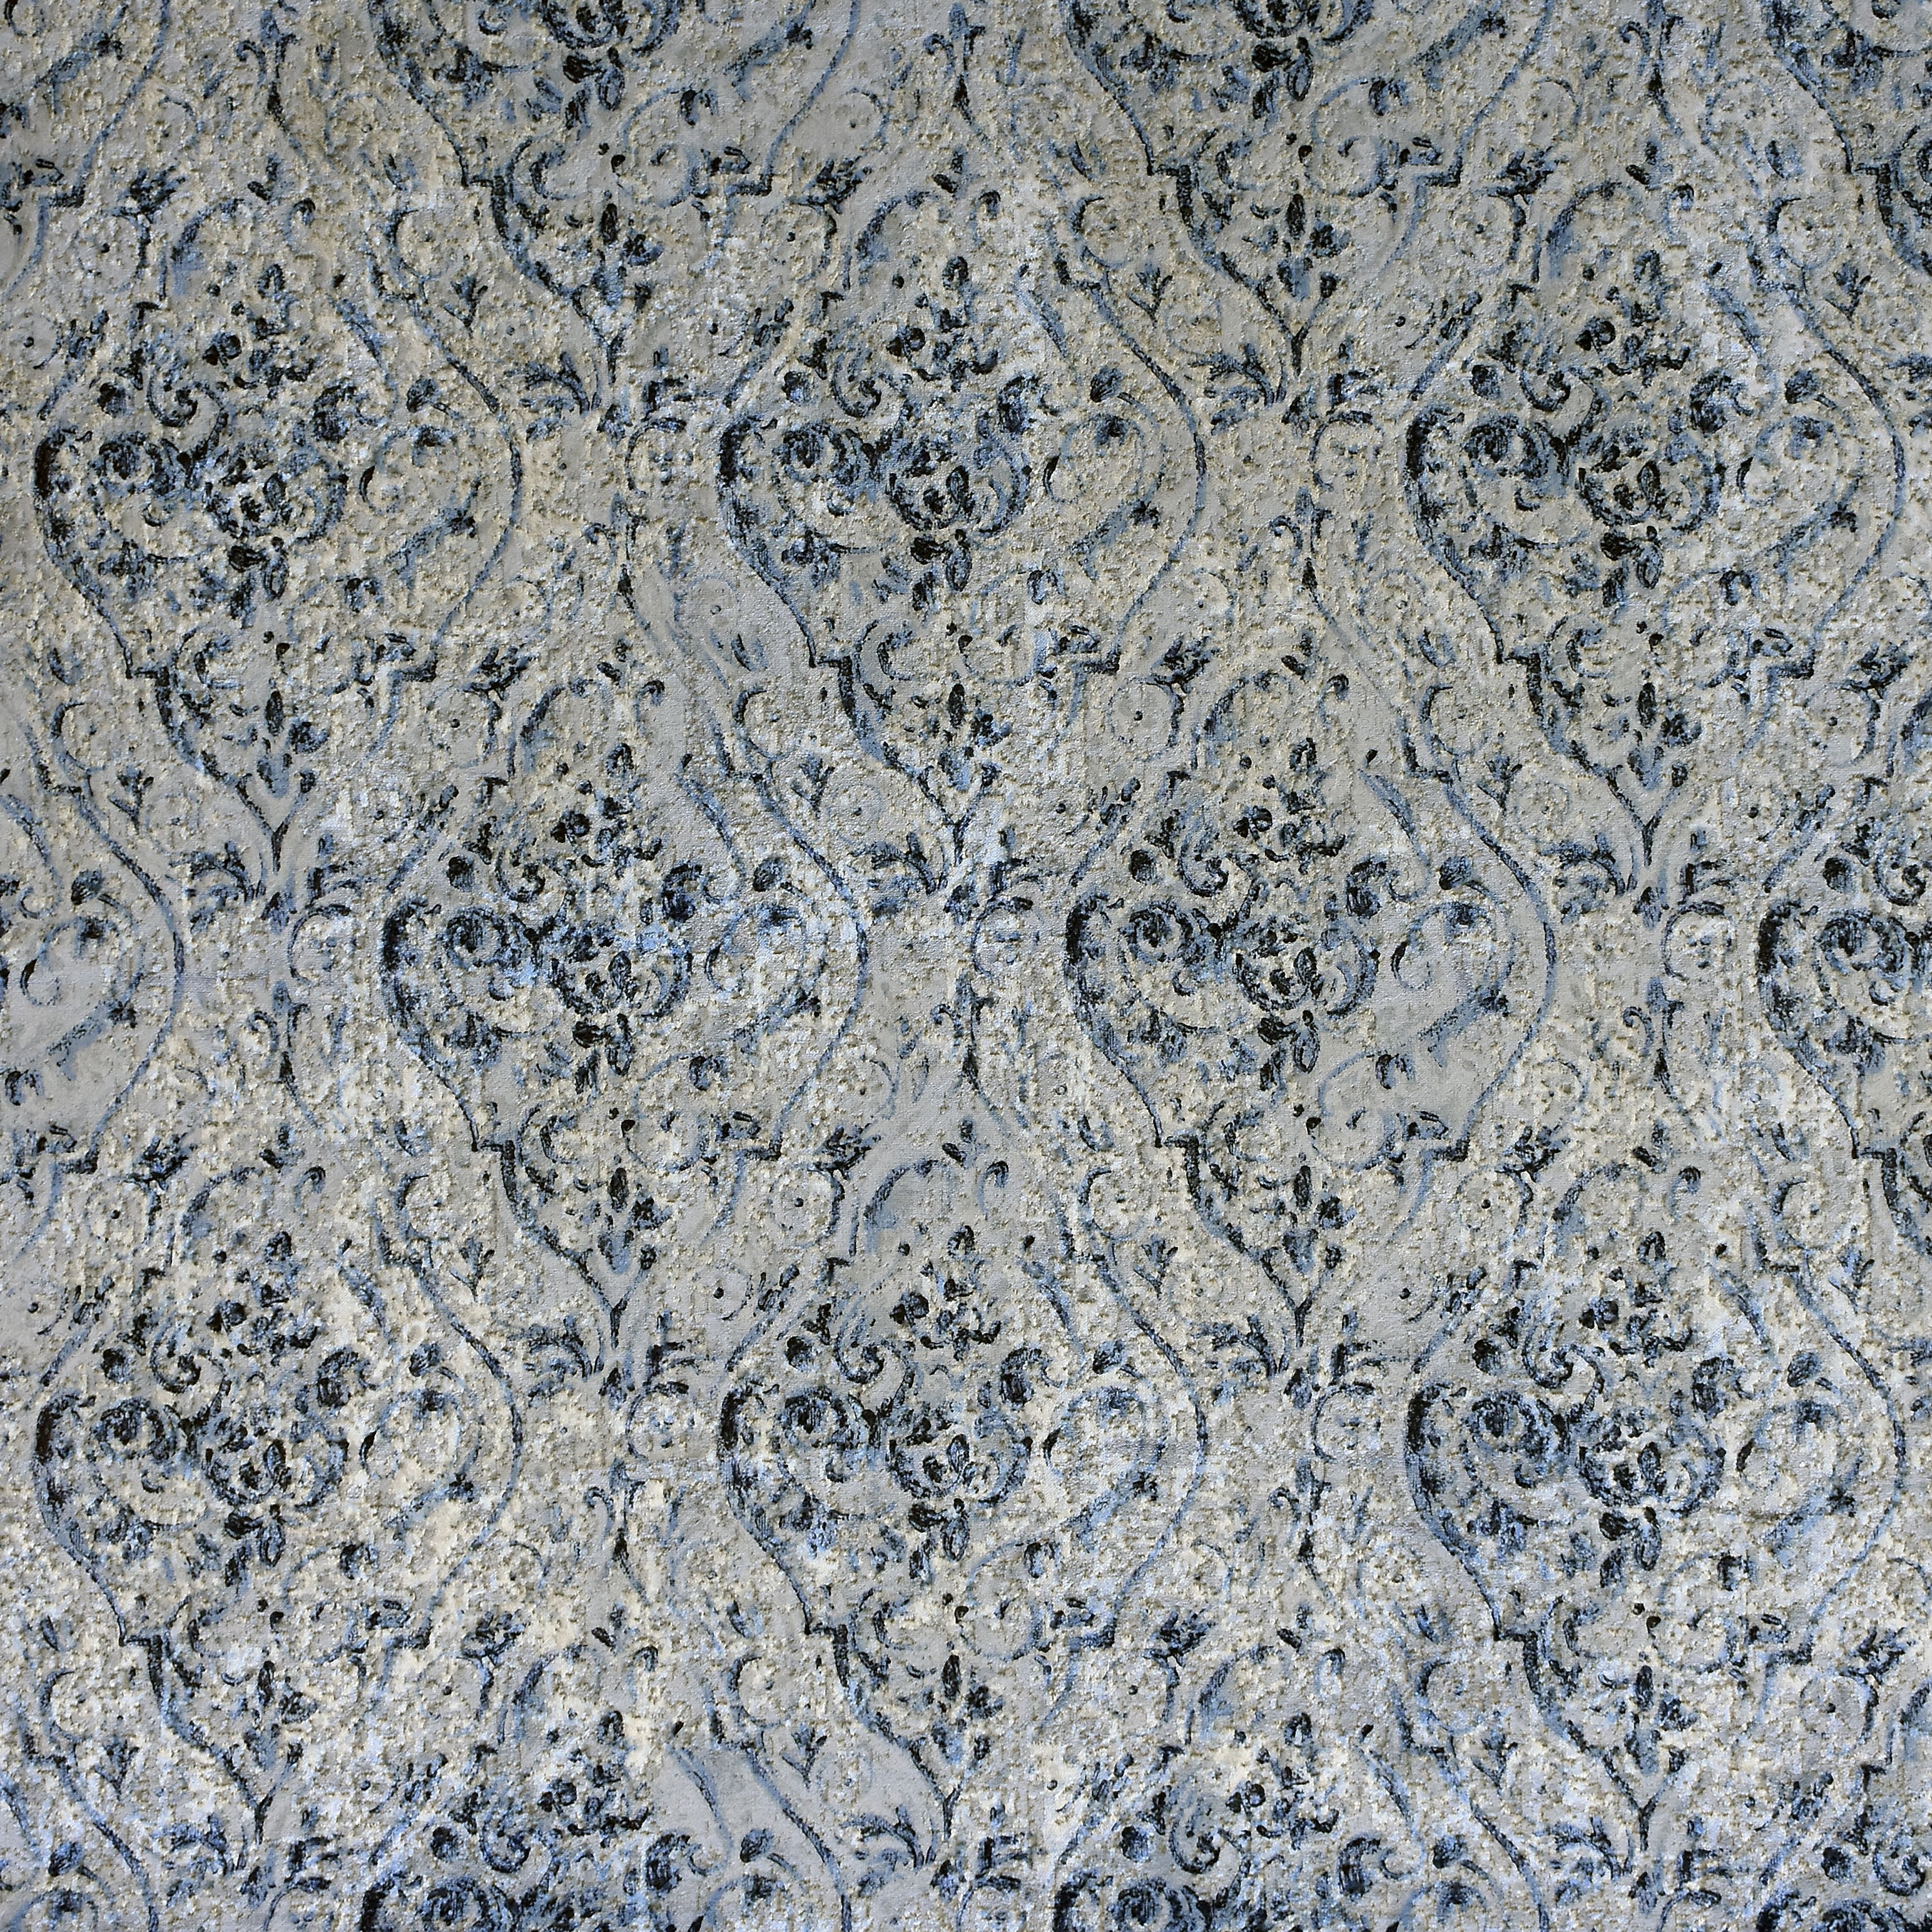 McAlister Textiles Renaissance Navy Blue Printed Velvet Curtains Tailored Curtains 116cm(w) x 137cm(d) (46" x 54") 